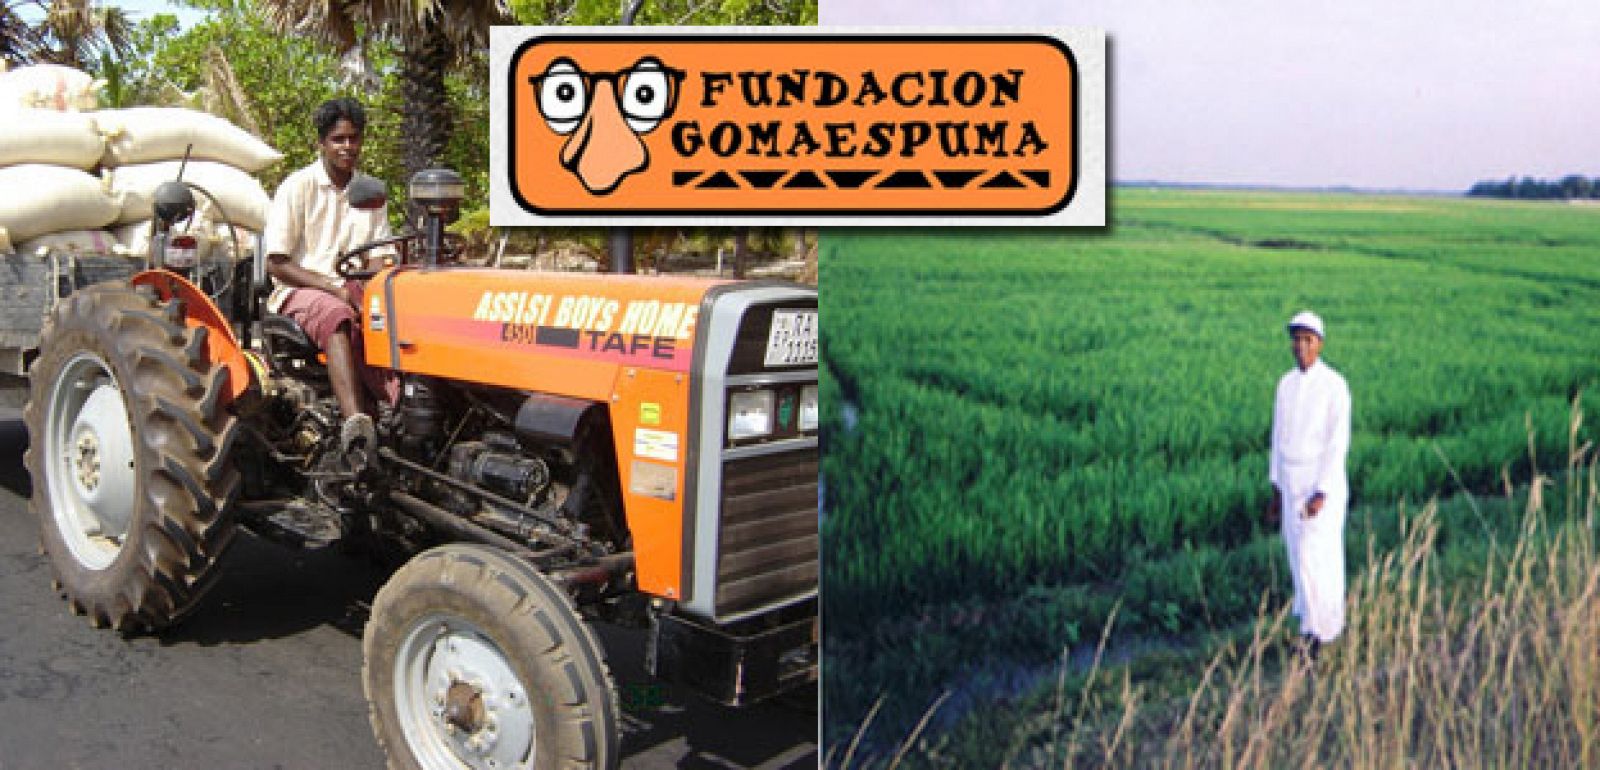 fundación gomaespuma